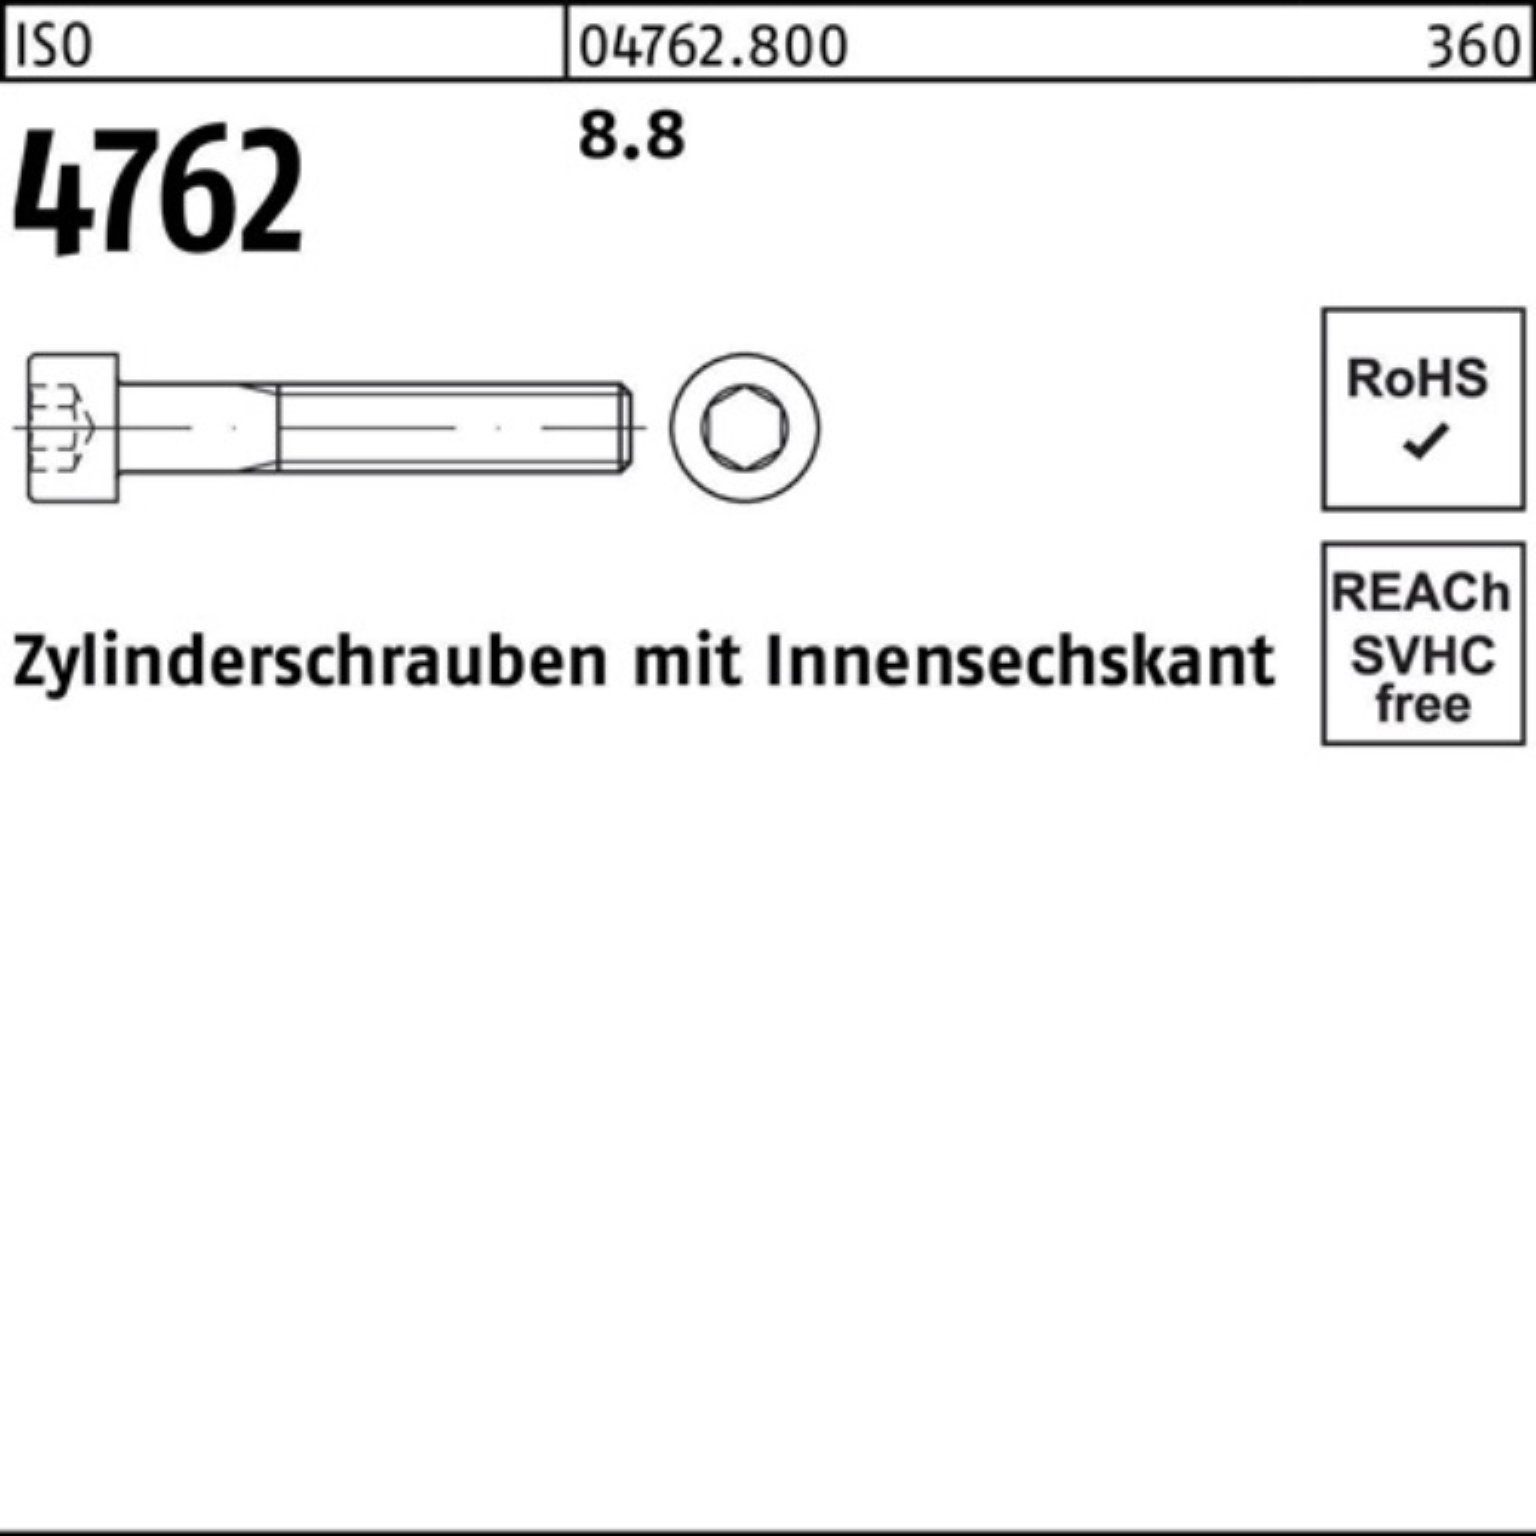 8.8 280 Reyher Zylinderschraube Stück 4762 Innen-6kt M10x Pack 100er 50 ISO Zylinderschraube